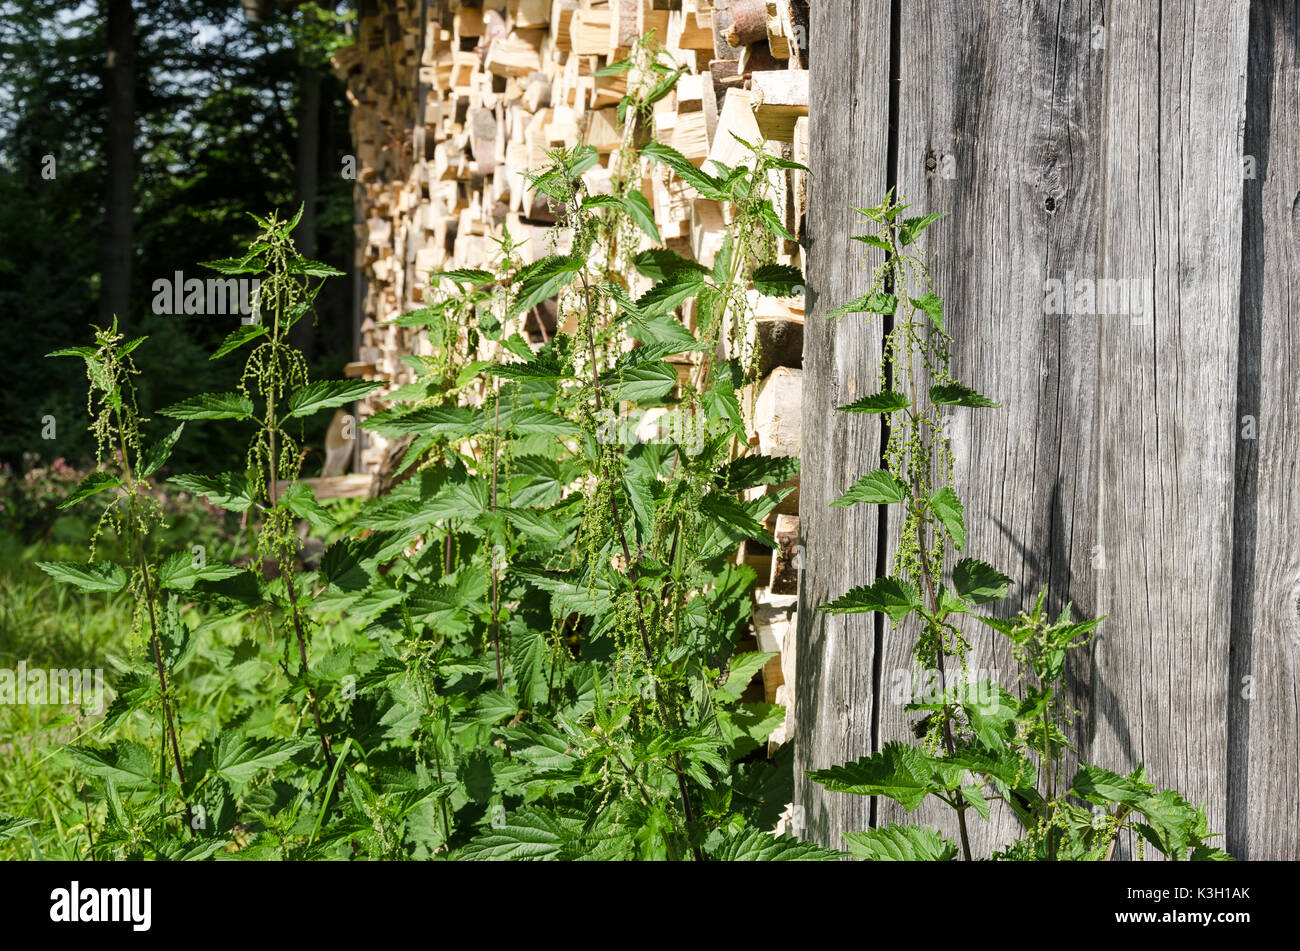 Brennnesseln neben einem holzschuppen. Gemeinsame Brennnessel, Urtica dioica, vor ein verwittertes Holz- wand und gestapelten Brennholz. Natürliche still life Foto Stockfoto